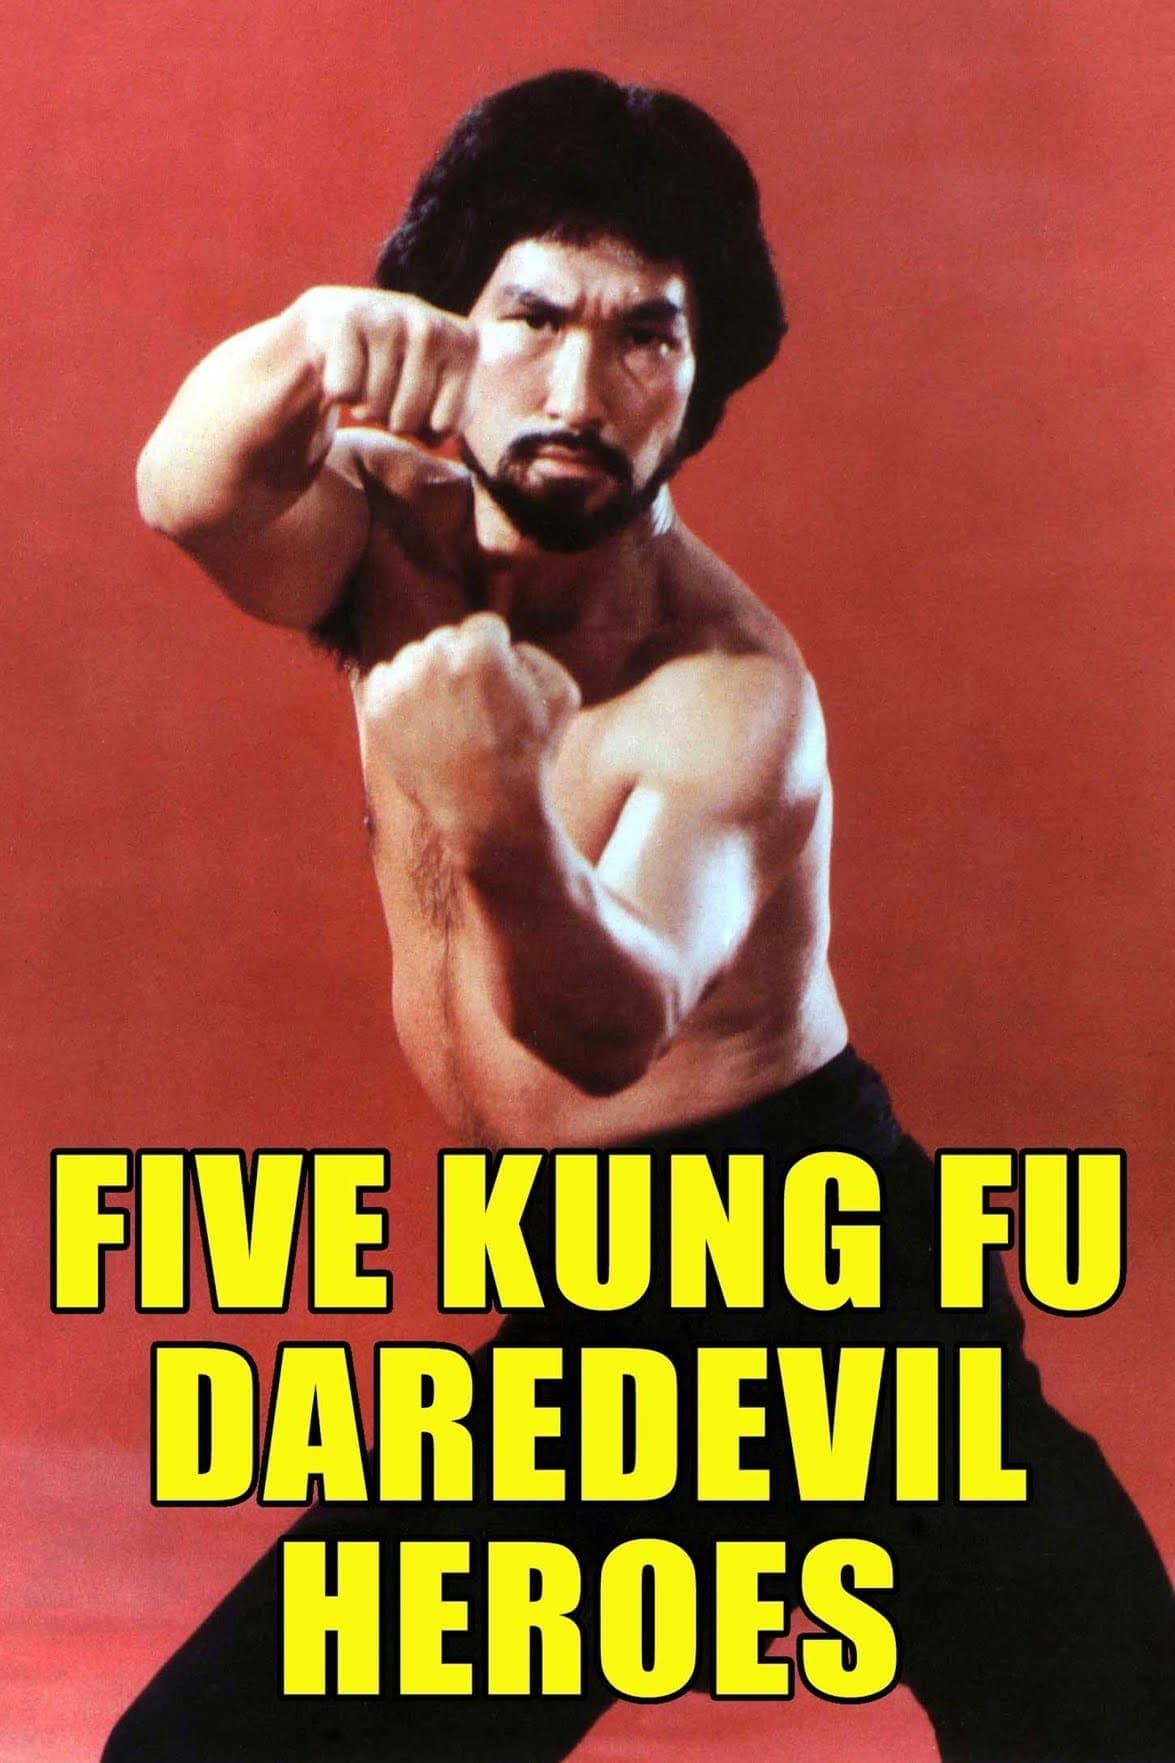 Five Kung Fu Daredevil Heroes